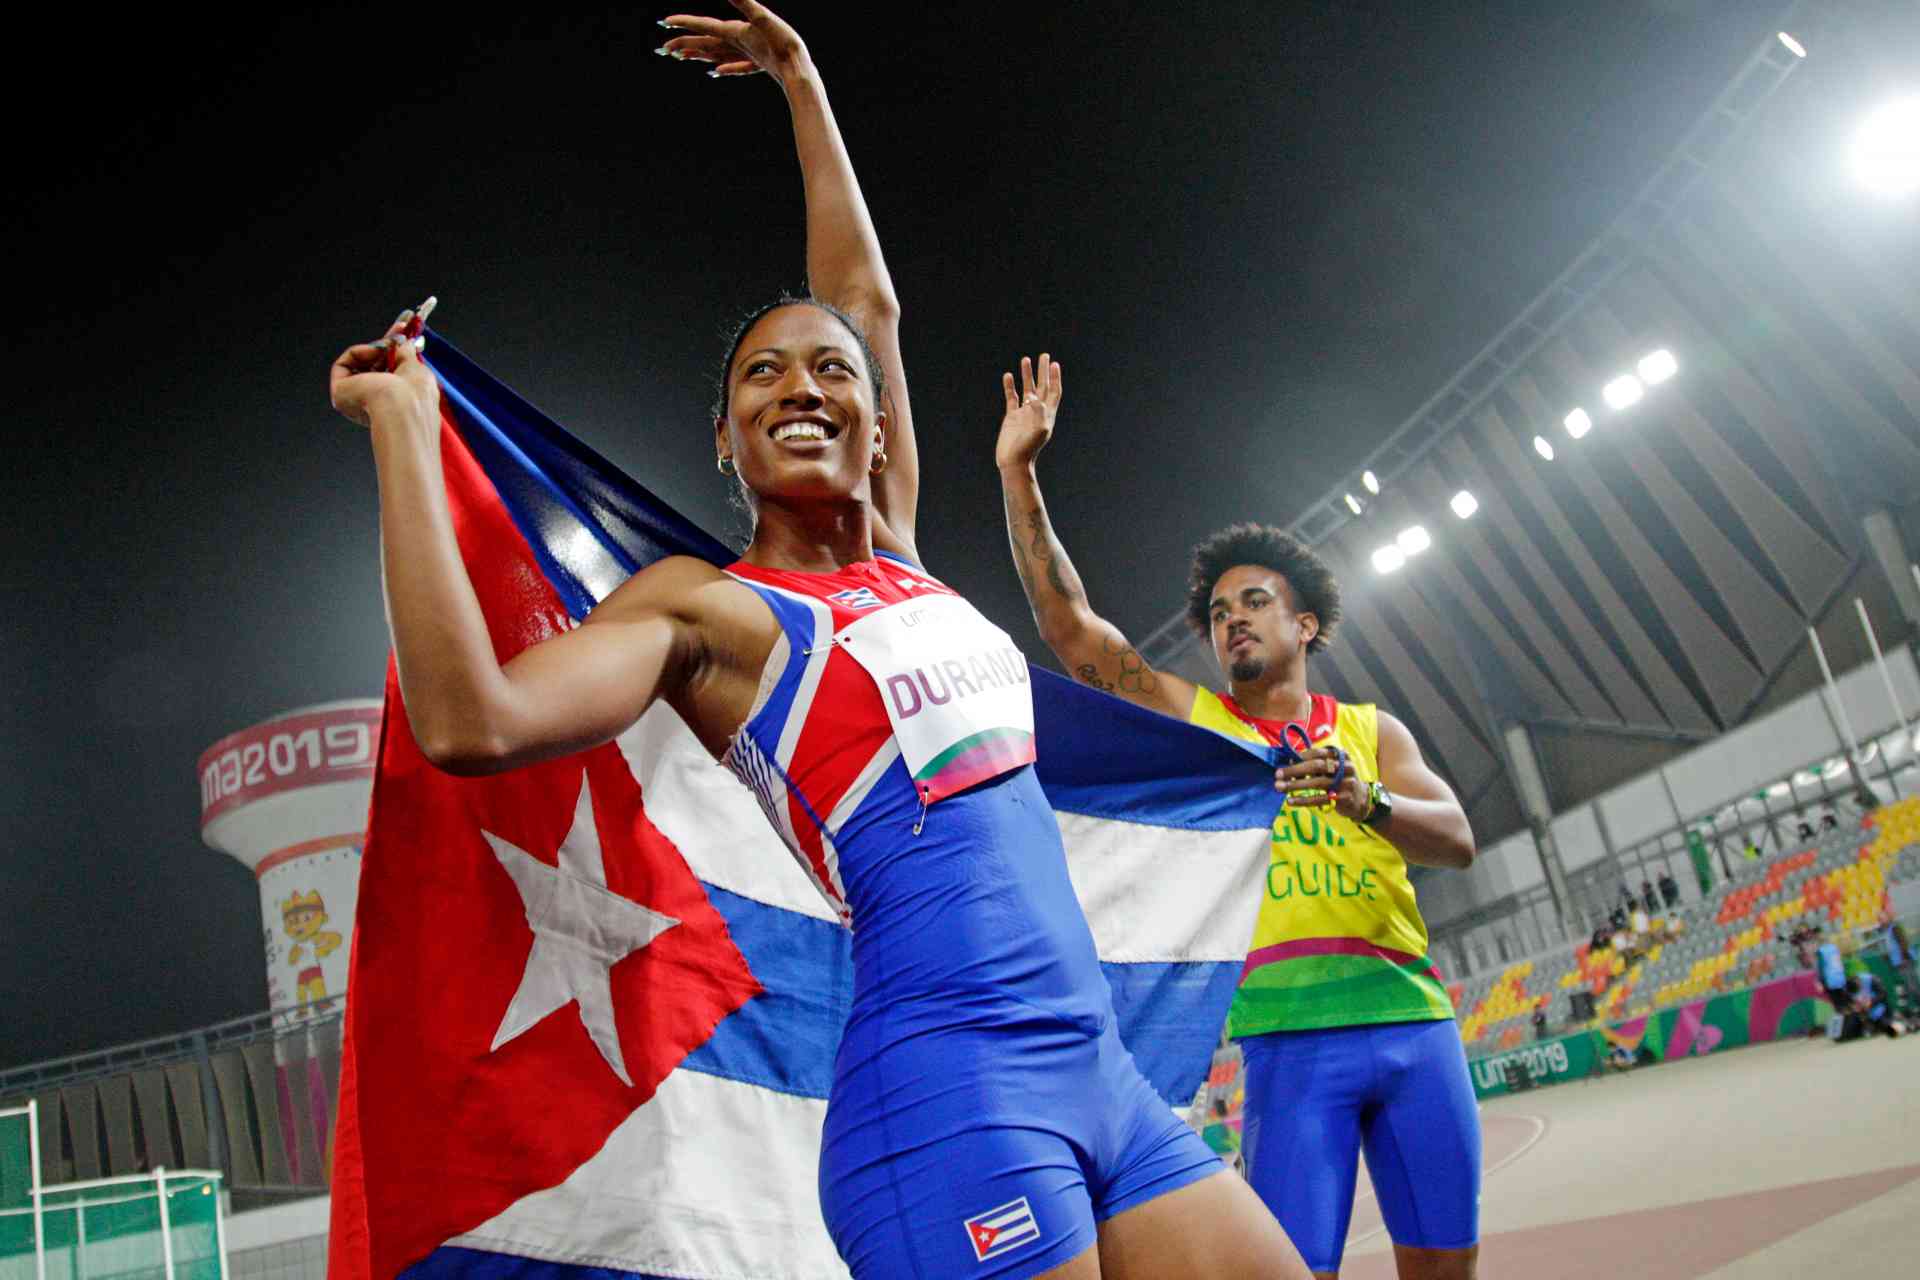 La velocista que llevará la bandera cubana en la inauguración de los Juegos Parapanamericanos 